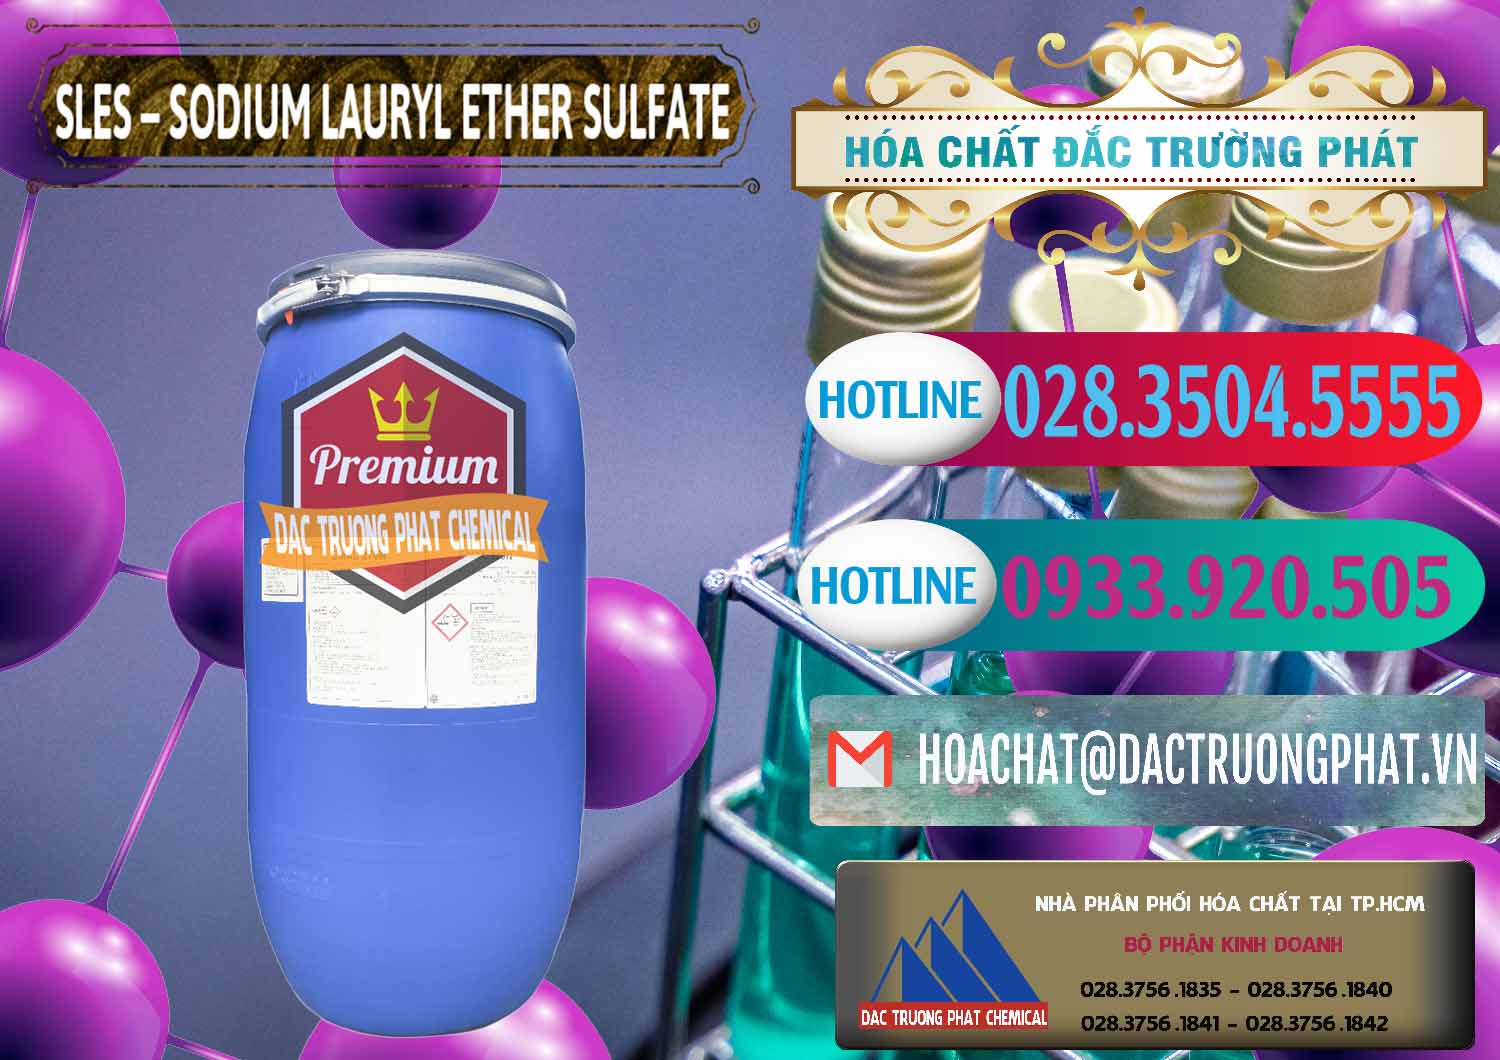 Đơn vị kinh doanh & bán Chất Tạo Bọt Sles - Sodium Lauryl Ether Sulphate Kao Indonesia - 0046 - Bán ( phân phối ) hóa chất tại TP.HCM - truongphat.vn